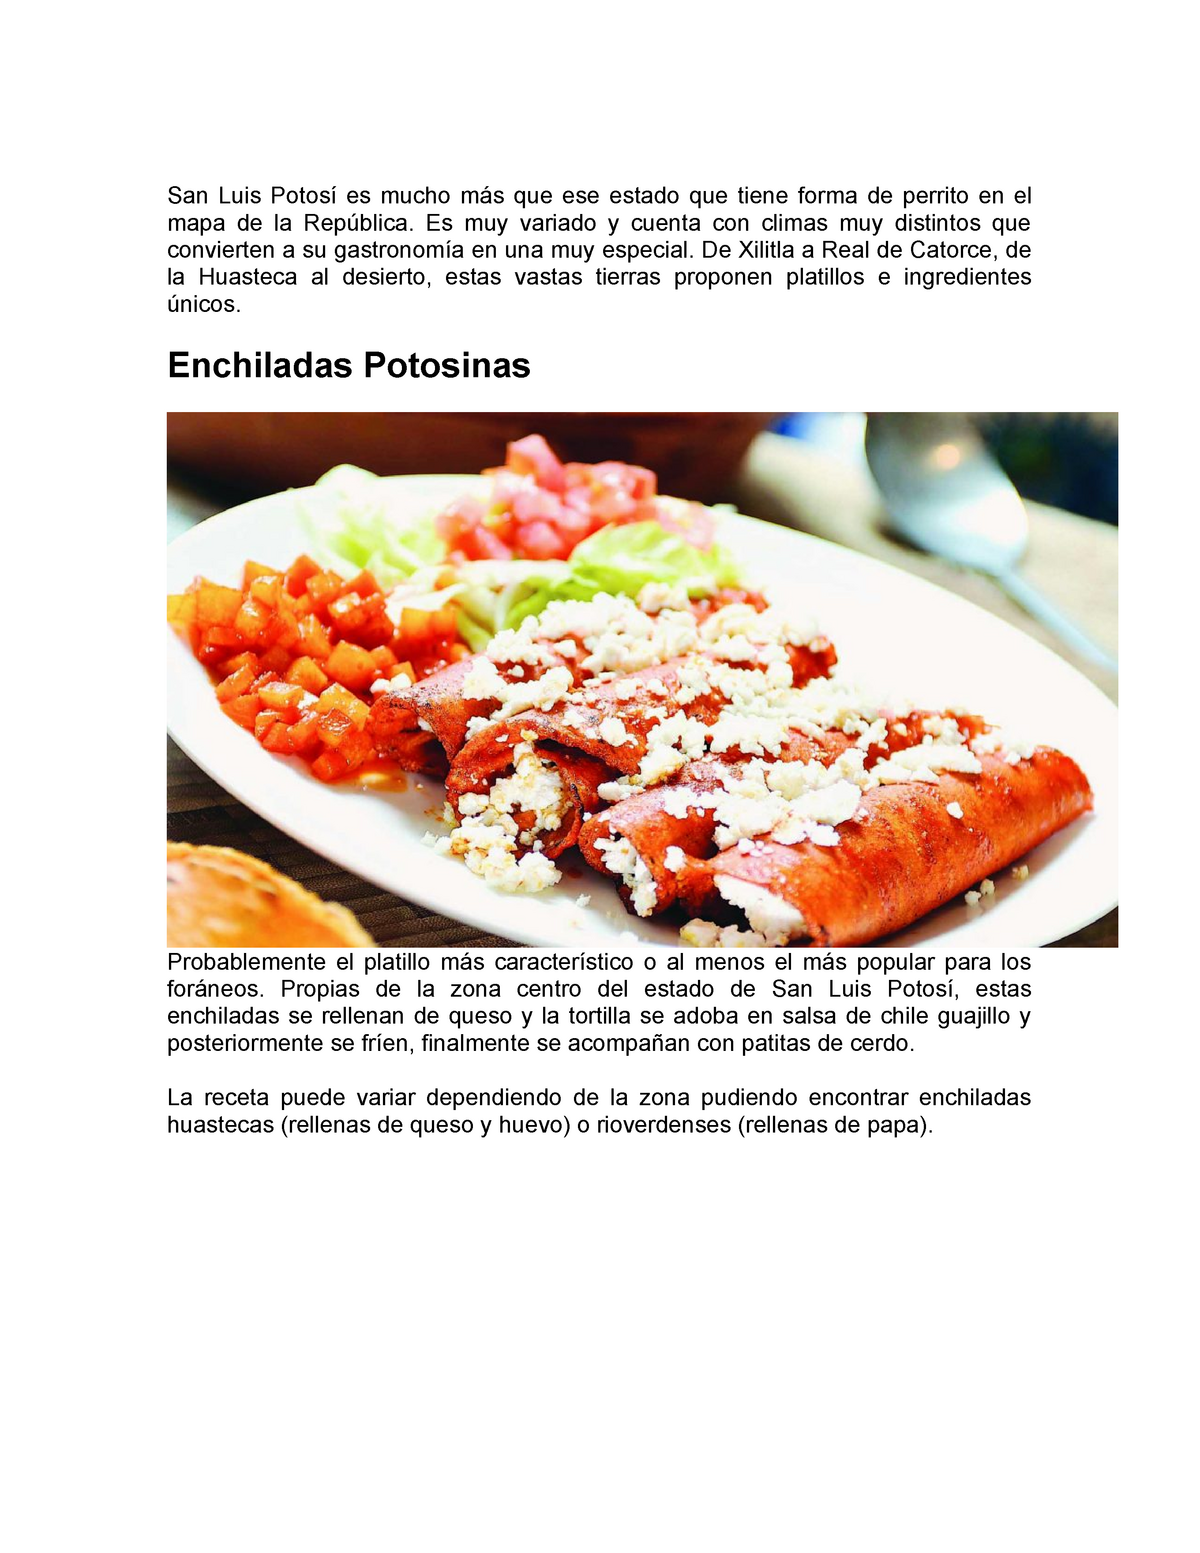  y su Gastronomia 1 - San Luis Potosí es mucho más que ese  estado que tiene forma de - Studocu